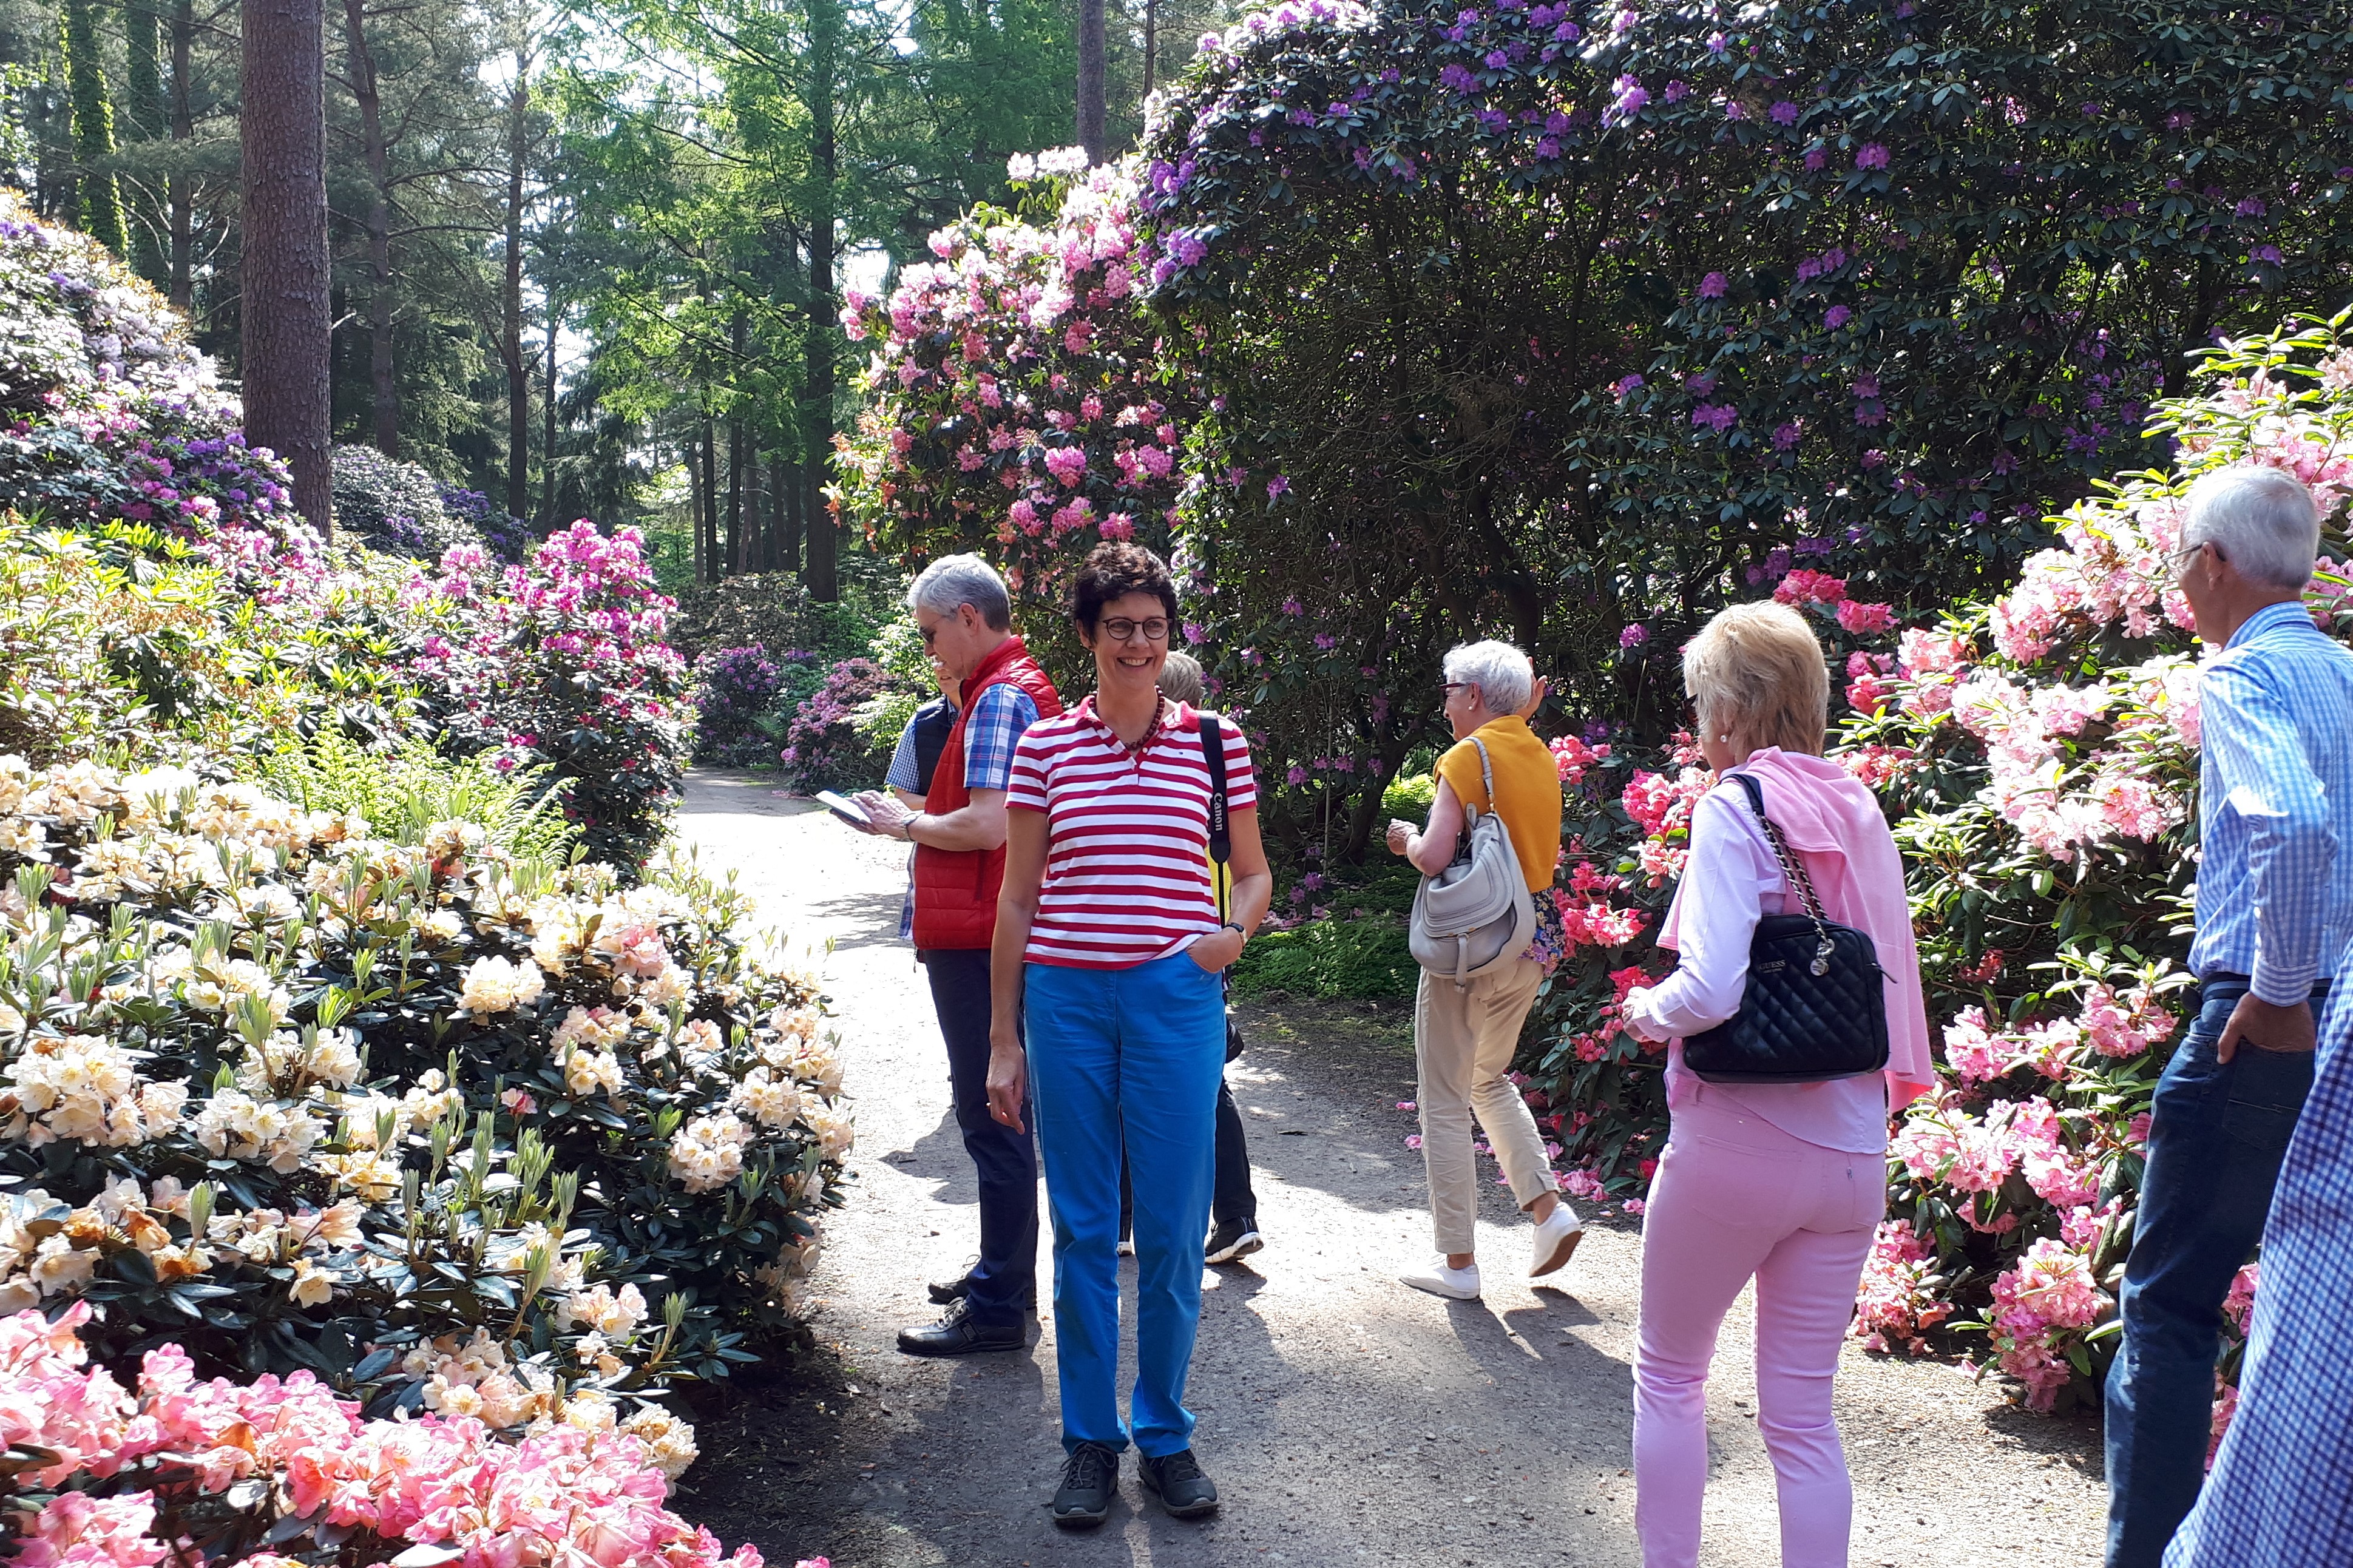 Personengruppe in Mitten von Rhododendron Büschen